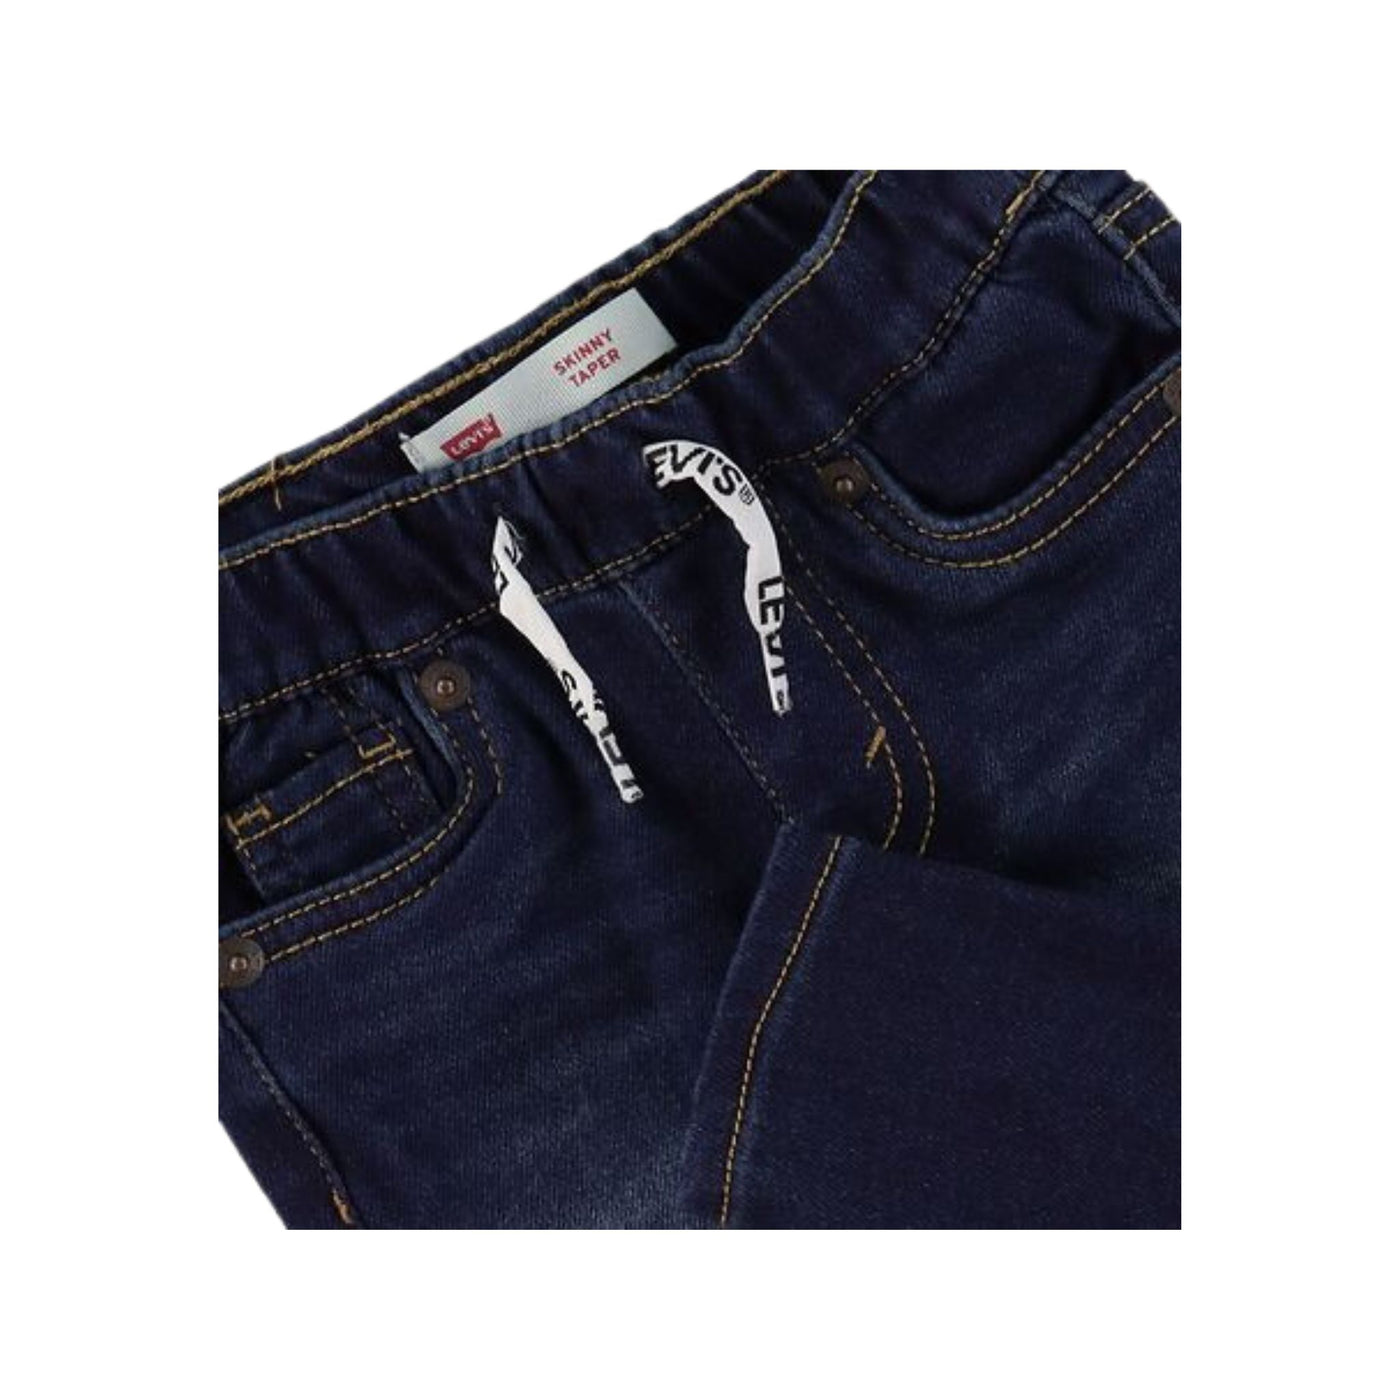 Jeans da neonato in denim scuro dettaglio coulisse